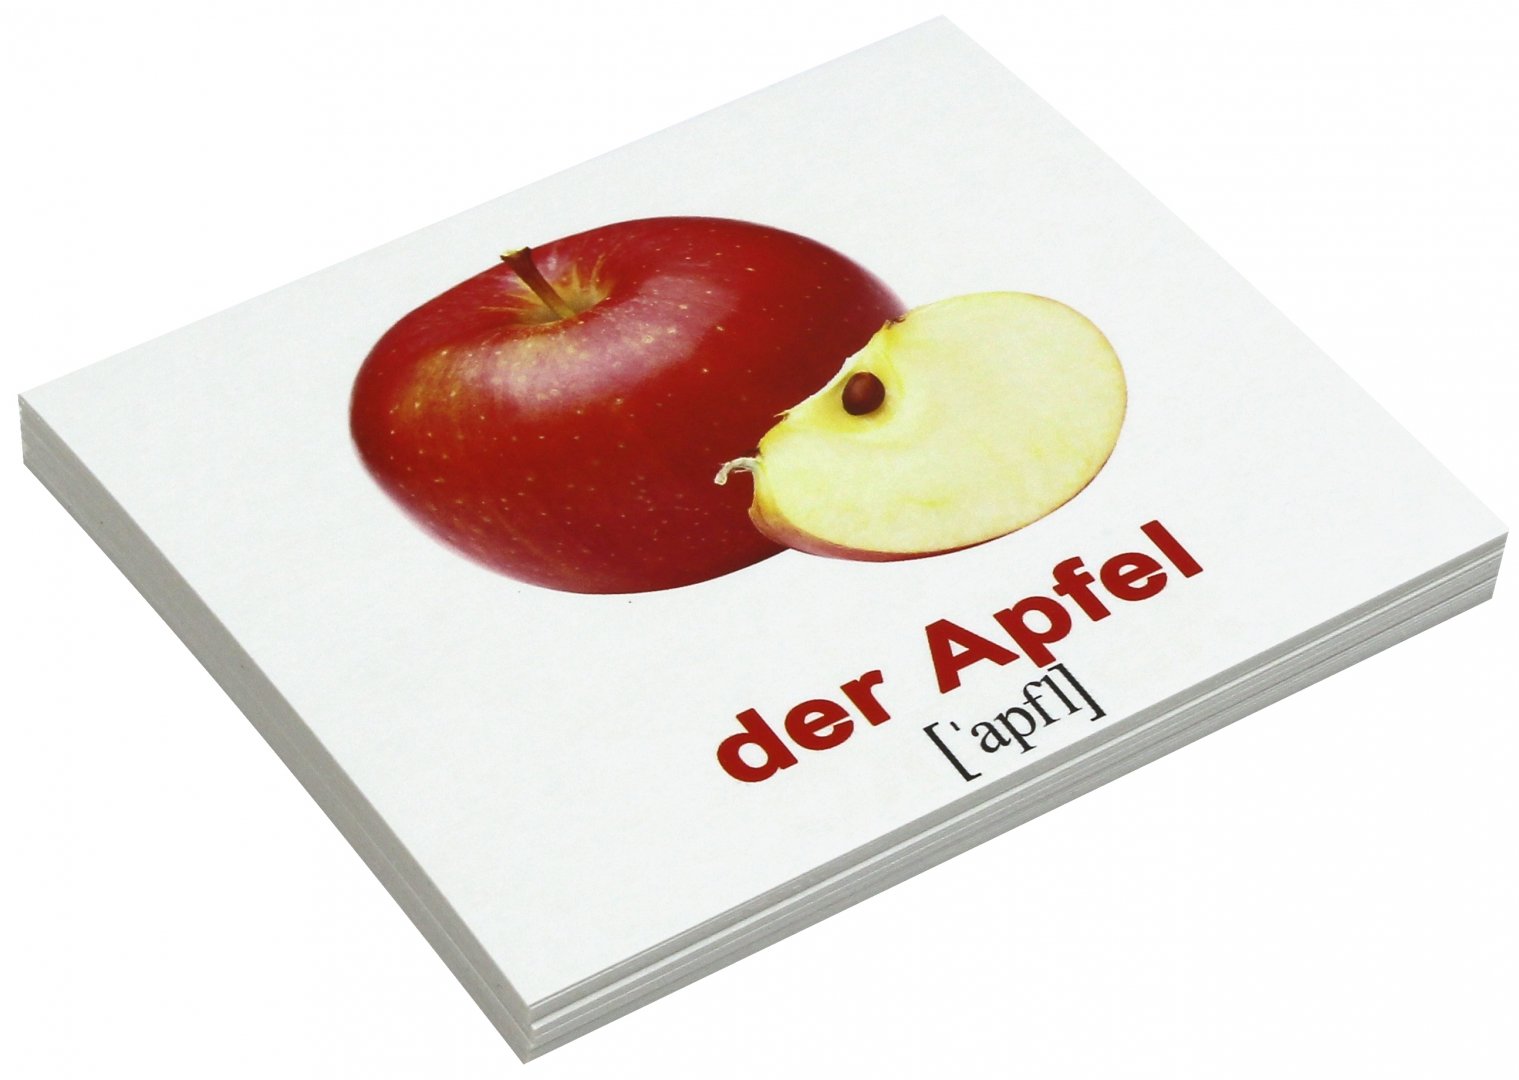 Иллюстрация 1 из 4 для Комплект карточек Мини-20 "Obst und Gemuse / Фрукты" (немецкий язык) - Носова, Епанова | Лабиринт - книги. Источник: Лабиринт